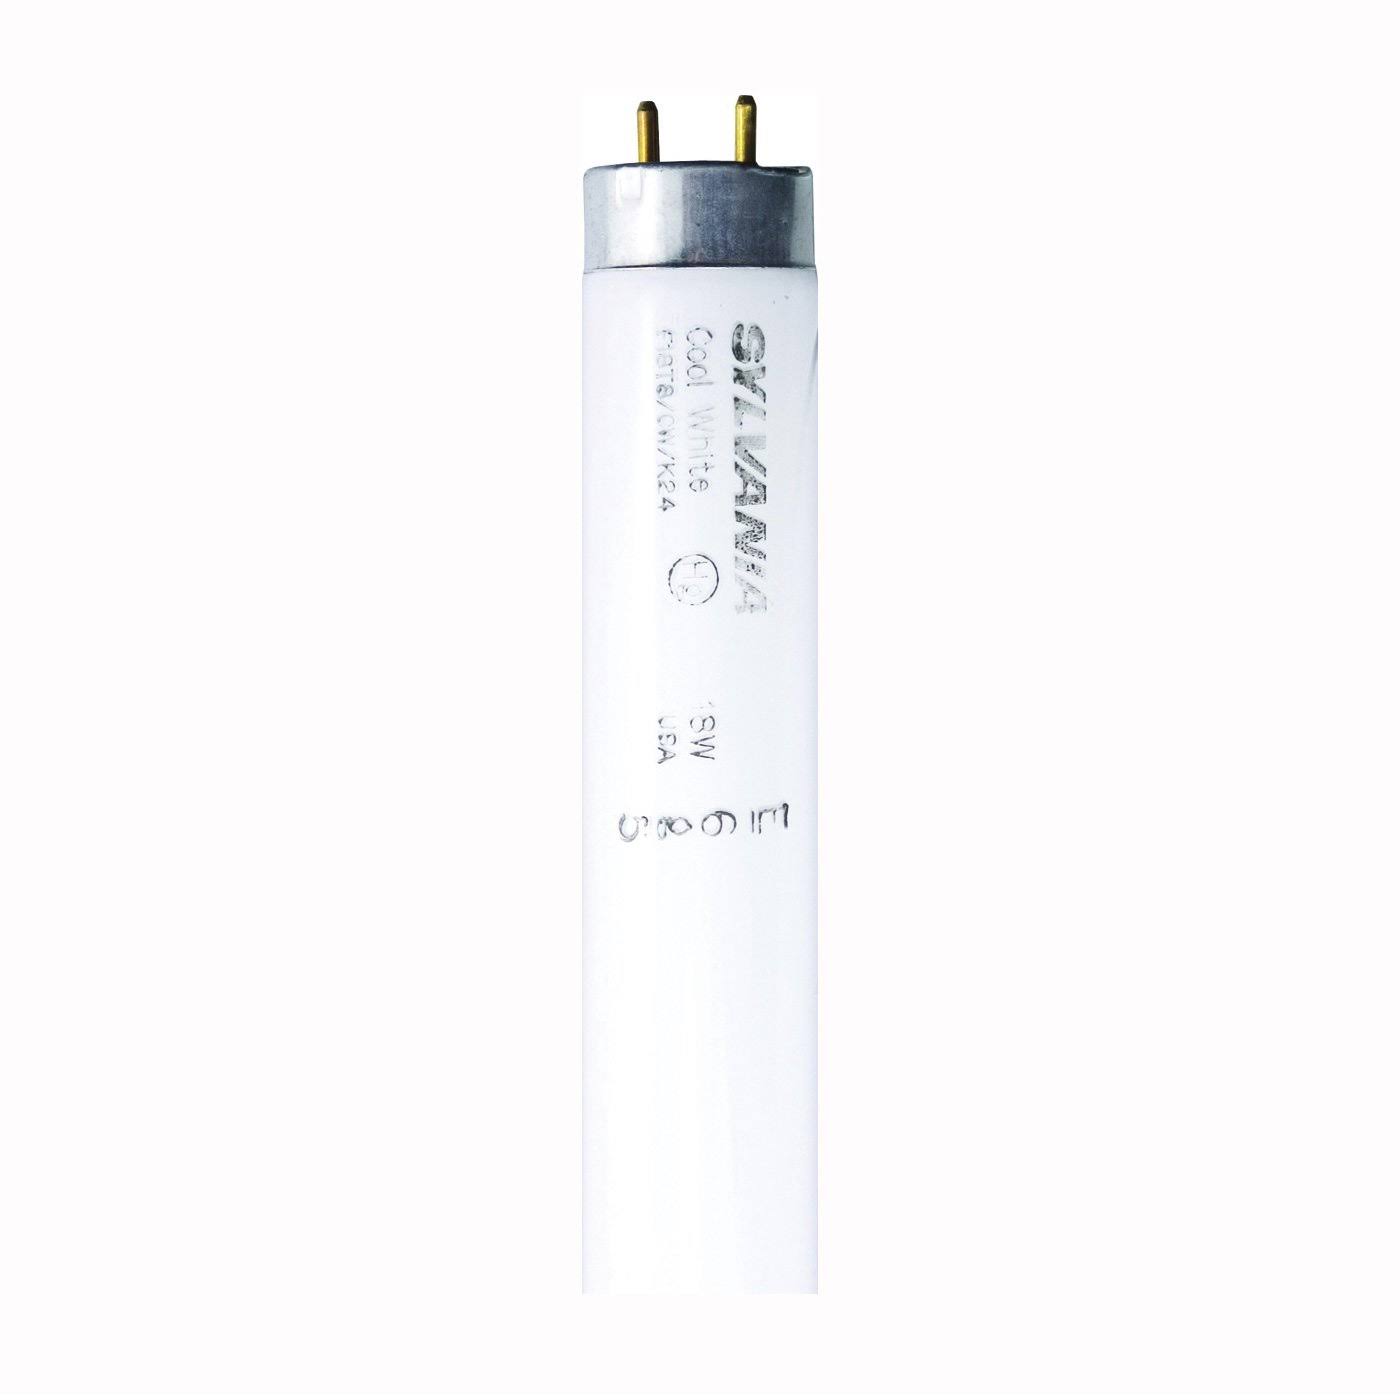 Sylvania 23012 Tamper-Resistant Fluorescent Lamp, 18 W, T8 Lamp, Medium